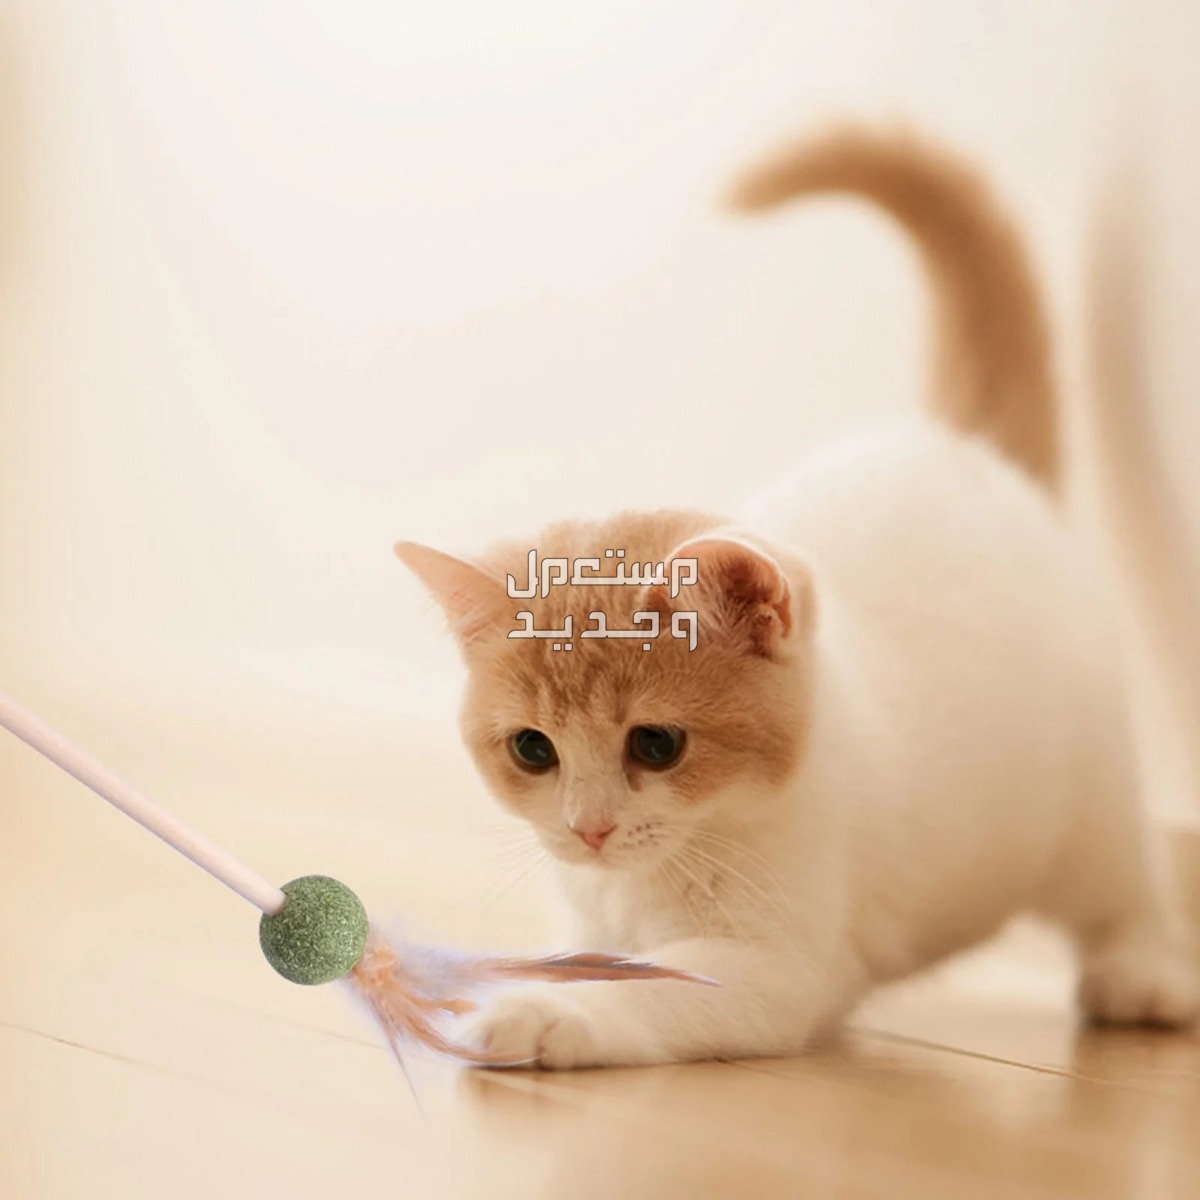 لمحبي القطط - تعرف على أفضل العاب قطط متحركة في قطر قطة تلعب بالريشة